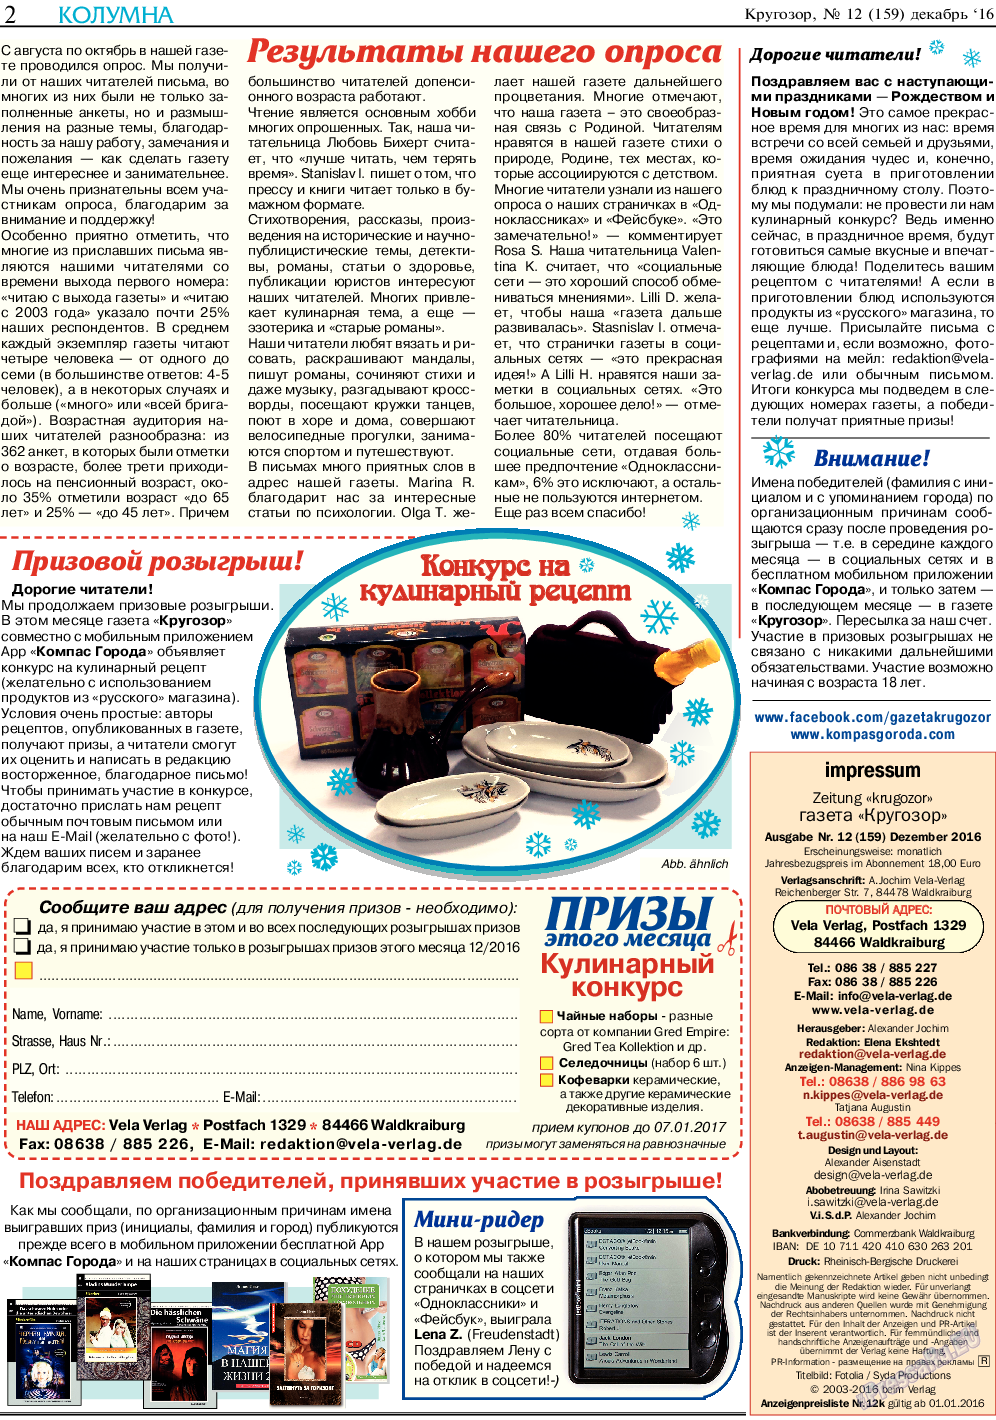 Кругозор, газета. 2016 №12 стр.2